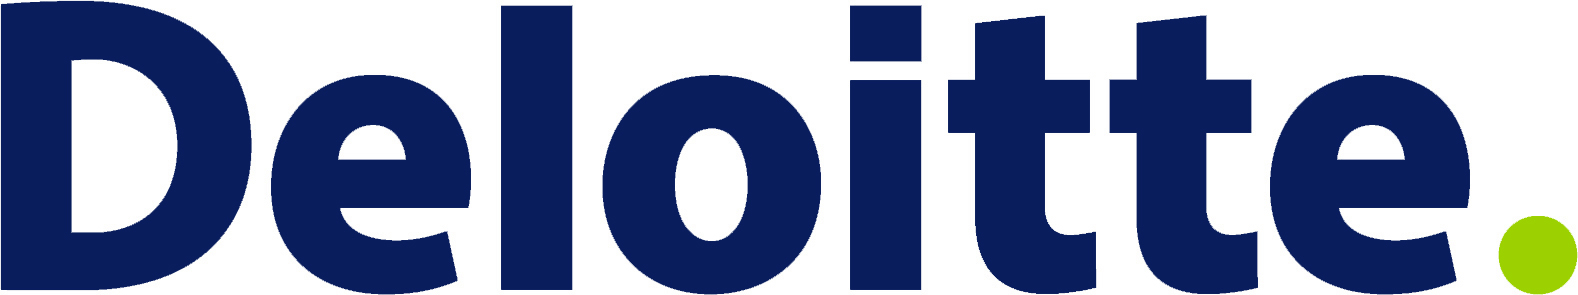 Deloitte & Touche Logo 091012